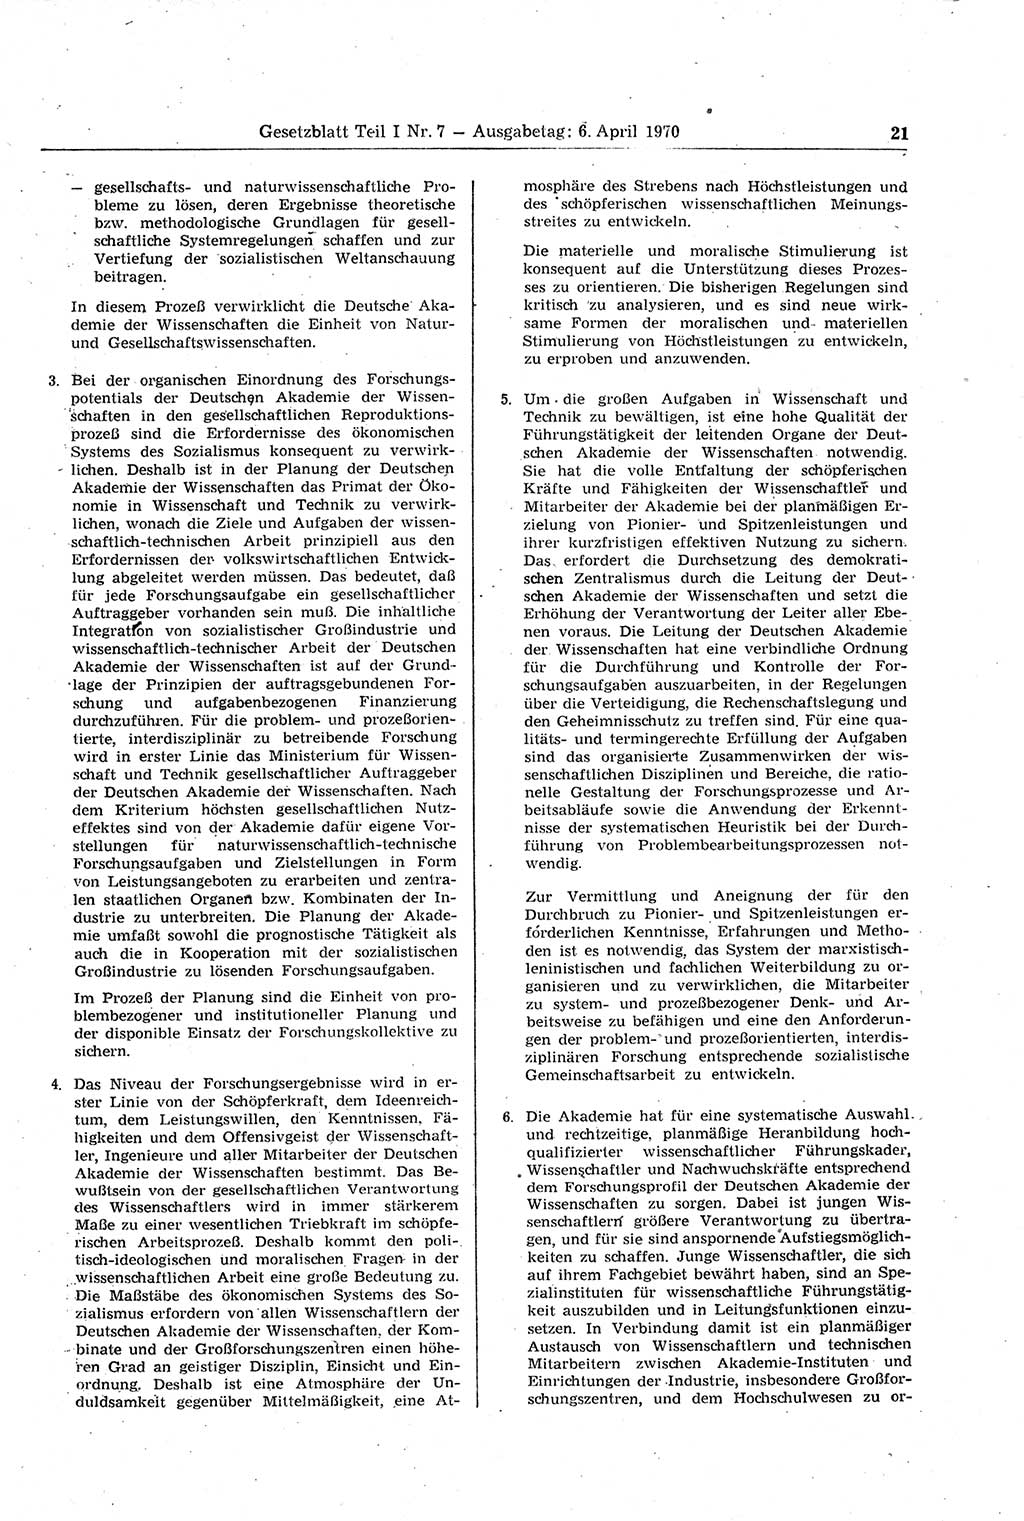 Gesetzblatt (GBl.) der Deutschen Demokratischen Republik (DDR) Teil Ⅰ 1970, Seite 21 (GBl. DDR Ⅰ 1970, S. 21)